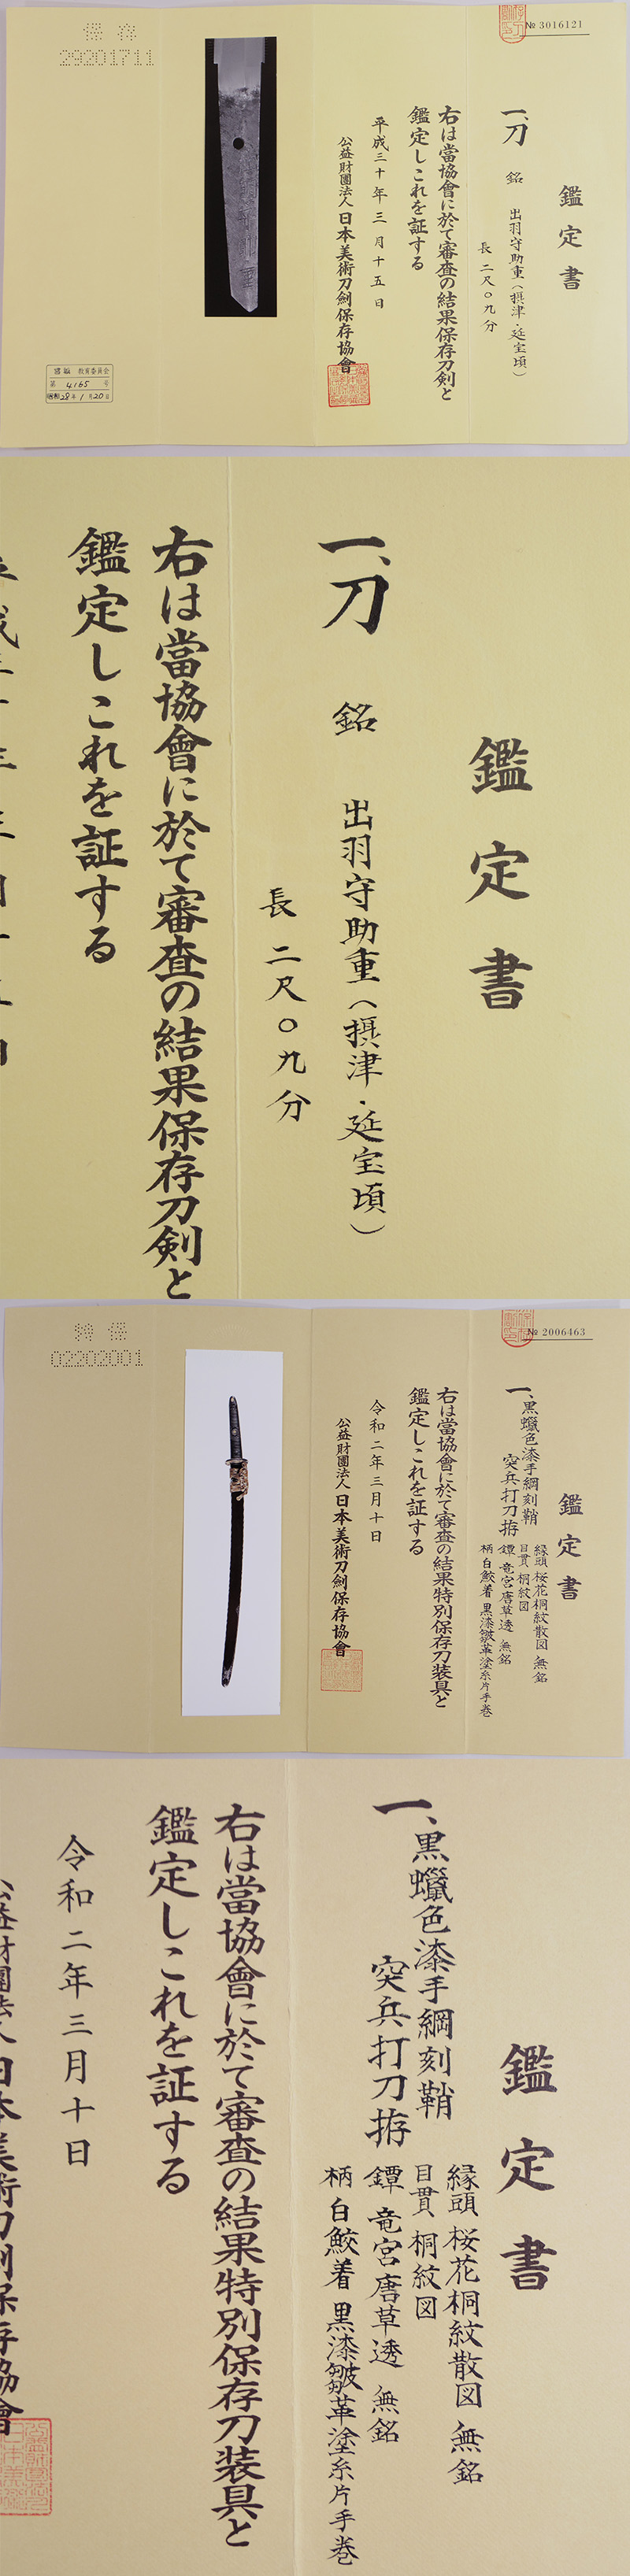 刀　出羽守助重　(摂津・延宝頃) (突兵打刀拵付) (業物) Picture of Certificate